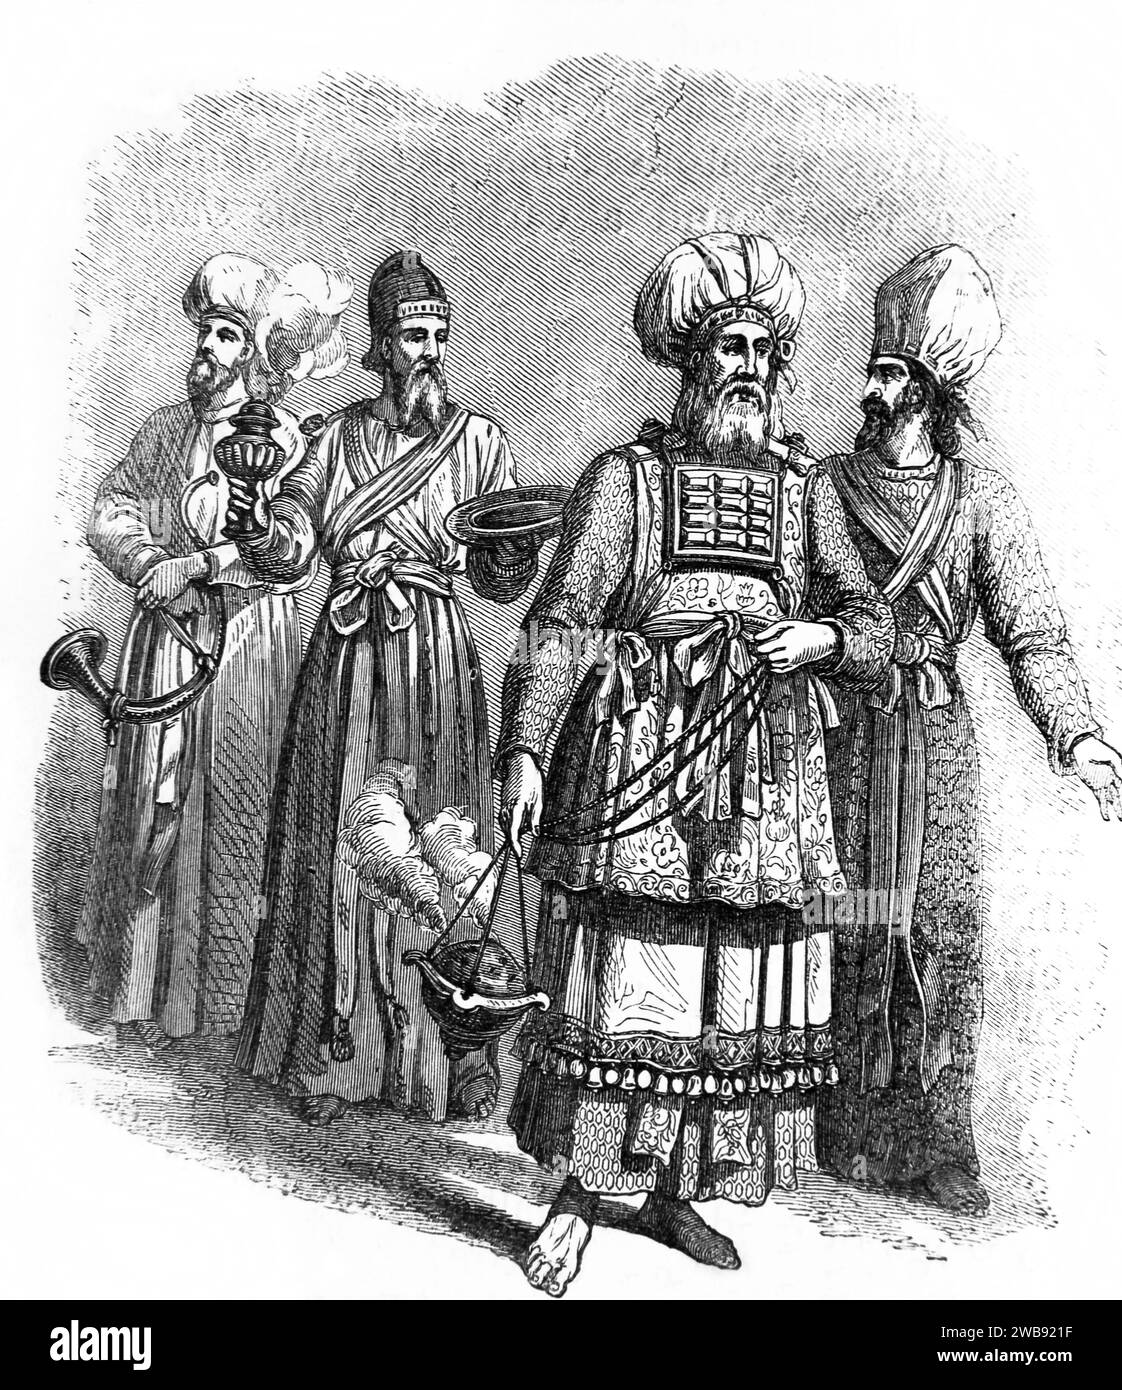 Illustration des hauts prêtres hébreux et prêtres avec brûleur d'encens (Thurible) au Tabernacle de la Bible de famille illustrée Banque D'Images